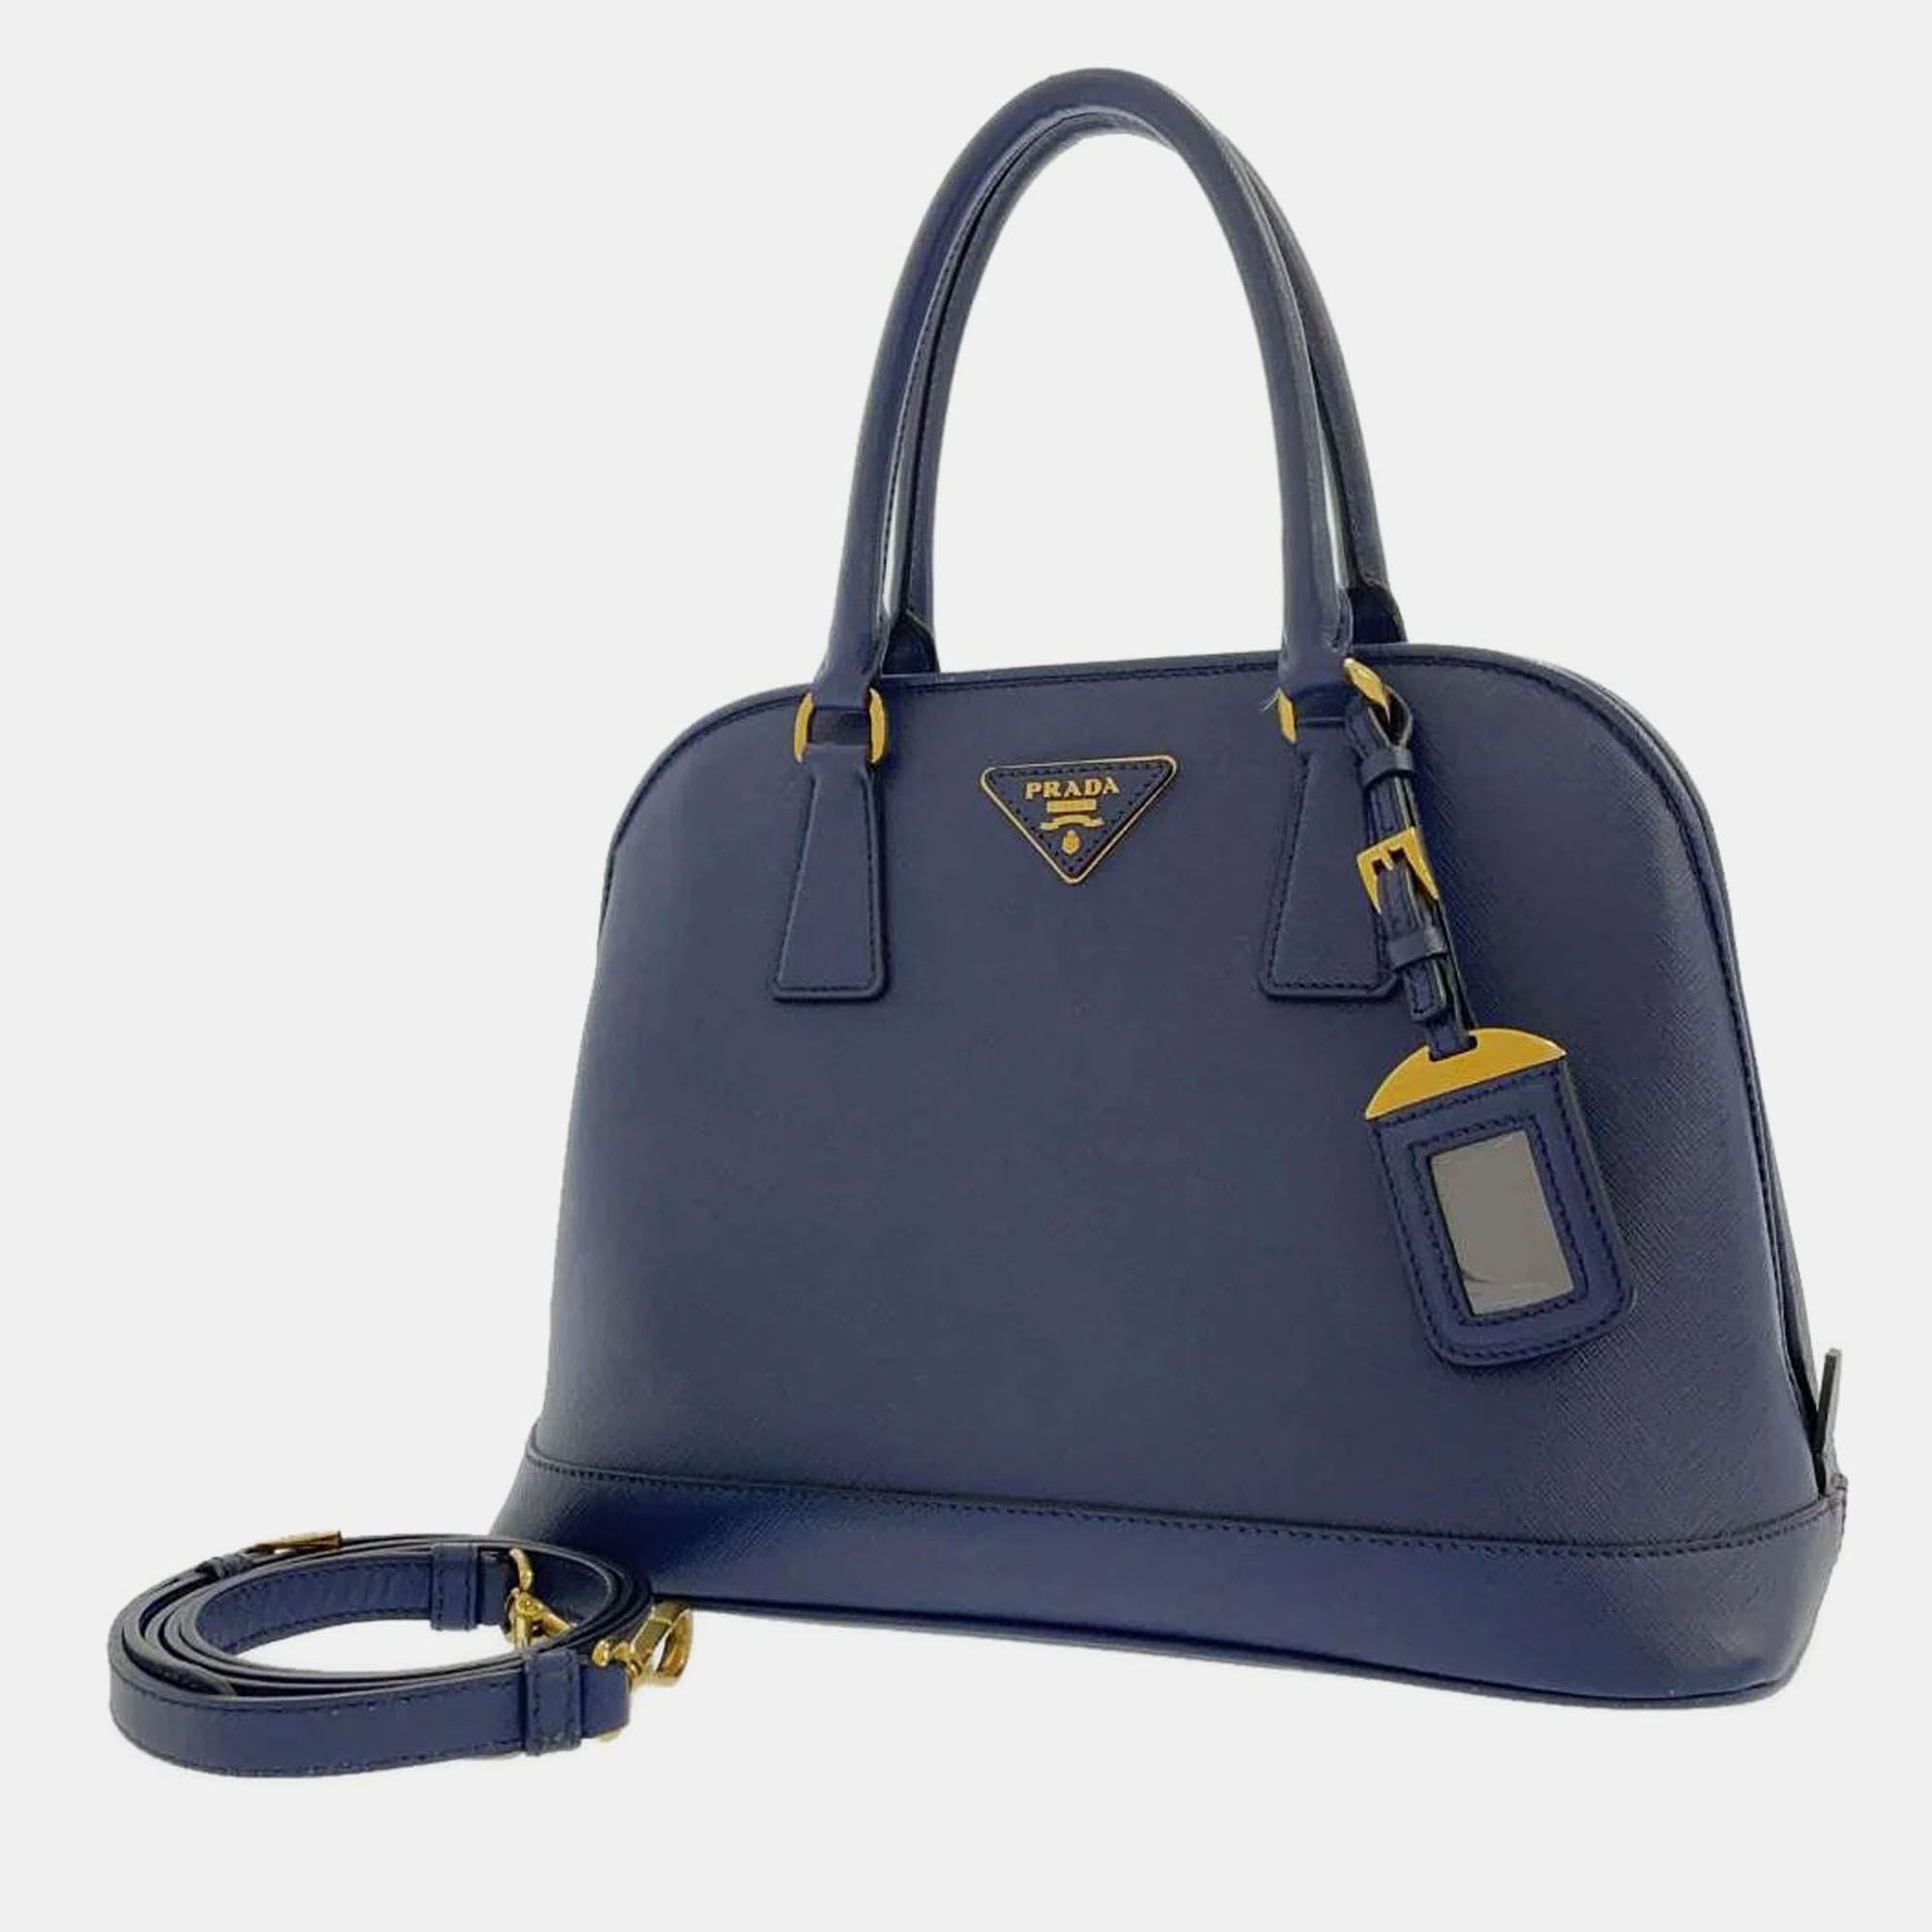 Pre-owned Prada Blue Saffiano Leather Promenade Satchel Bag